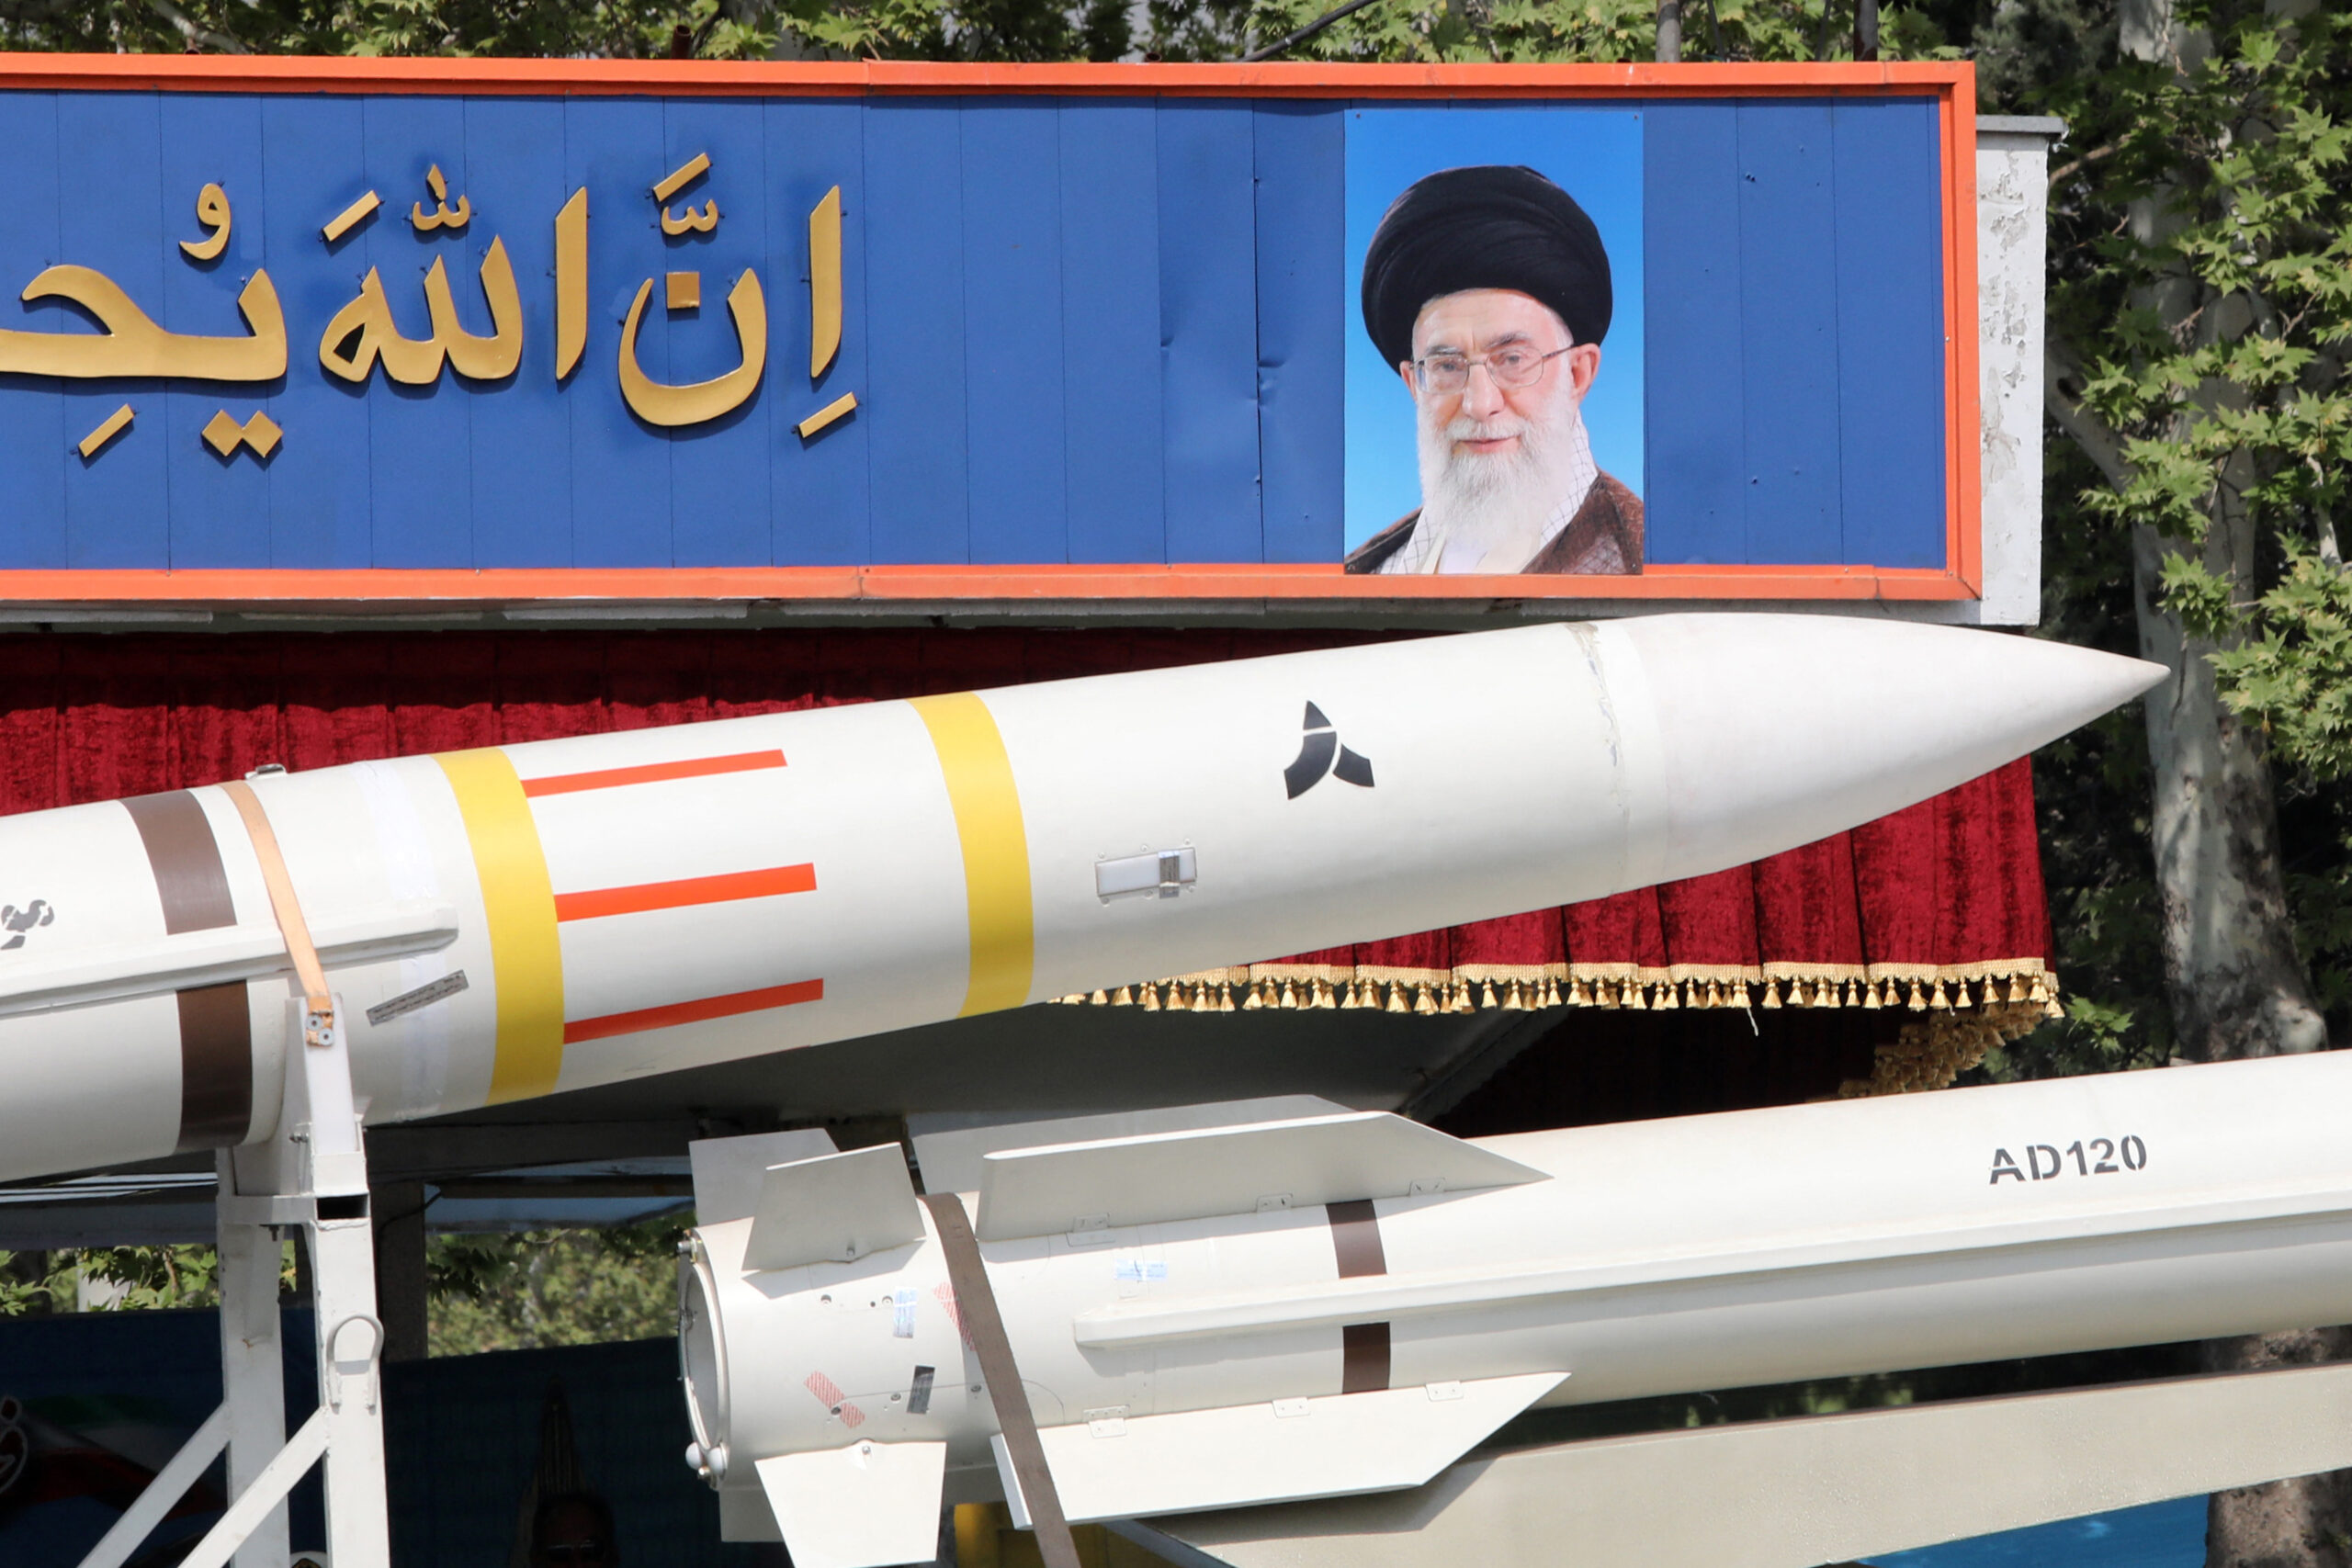 L'Iran minaccia: "Se la nostra esistenza fosse minacciata costruiremmo un'arma nucleare"